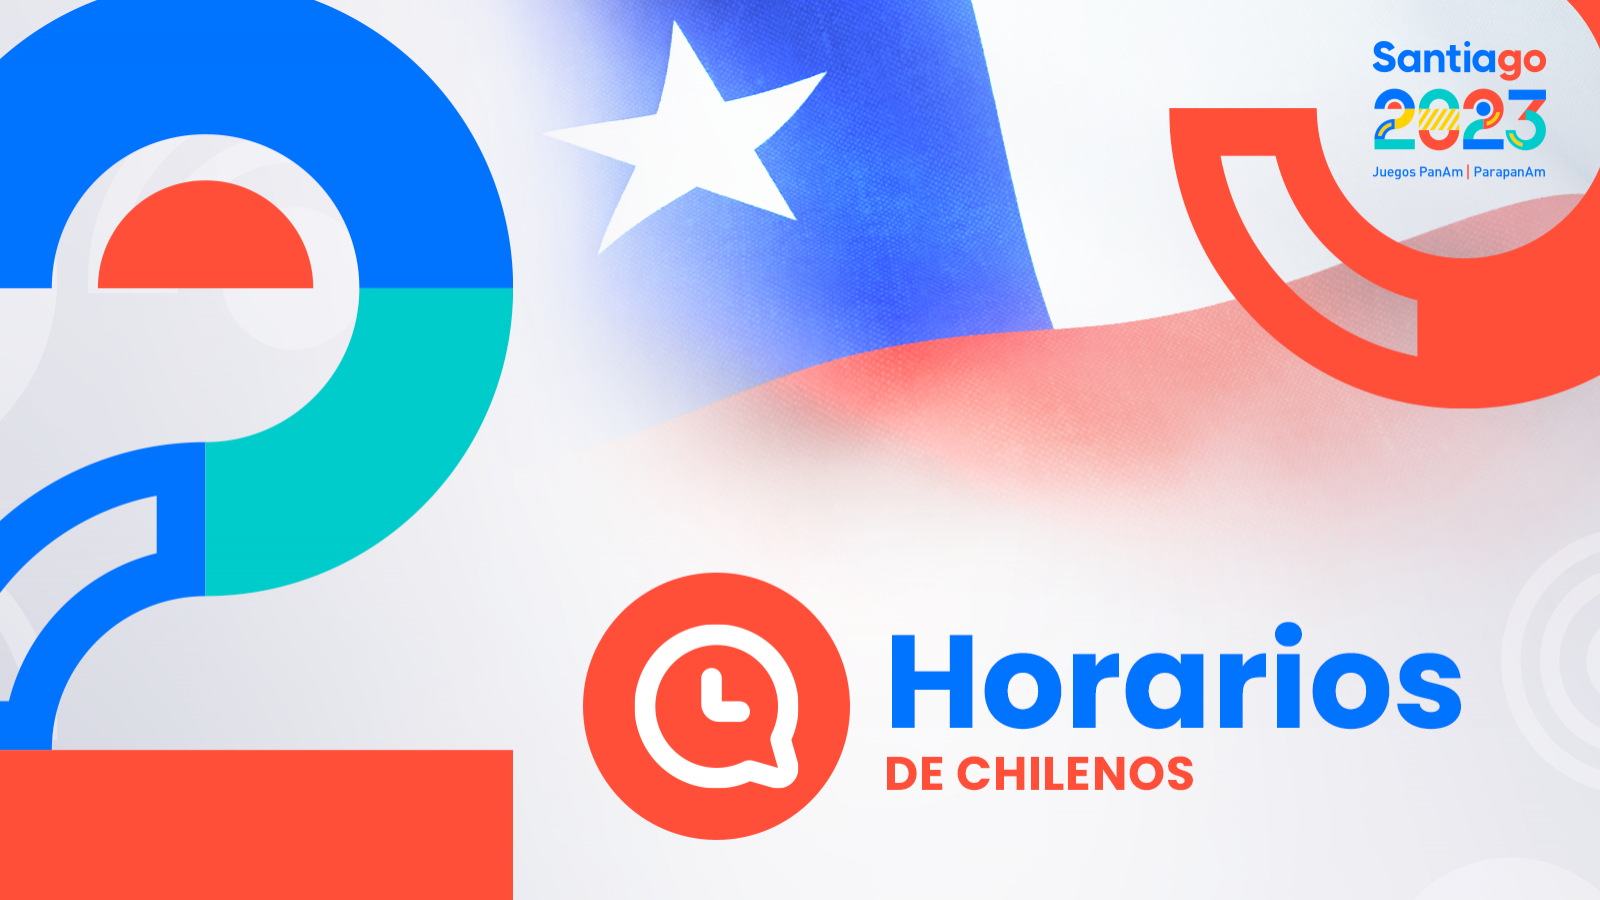 HORARIOS de chilenos en Santiago 2023: domingo 29 de octubre